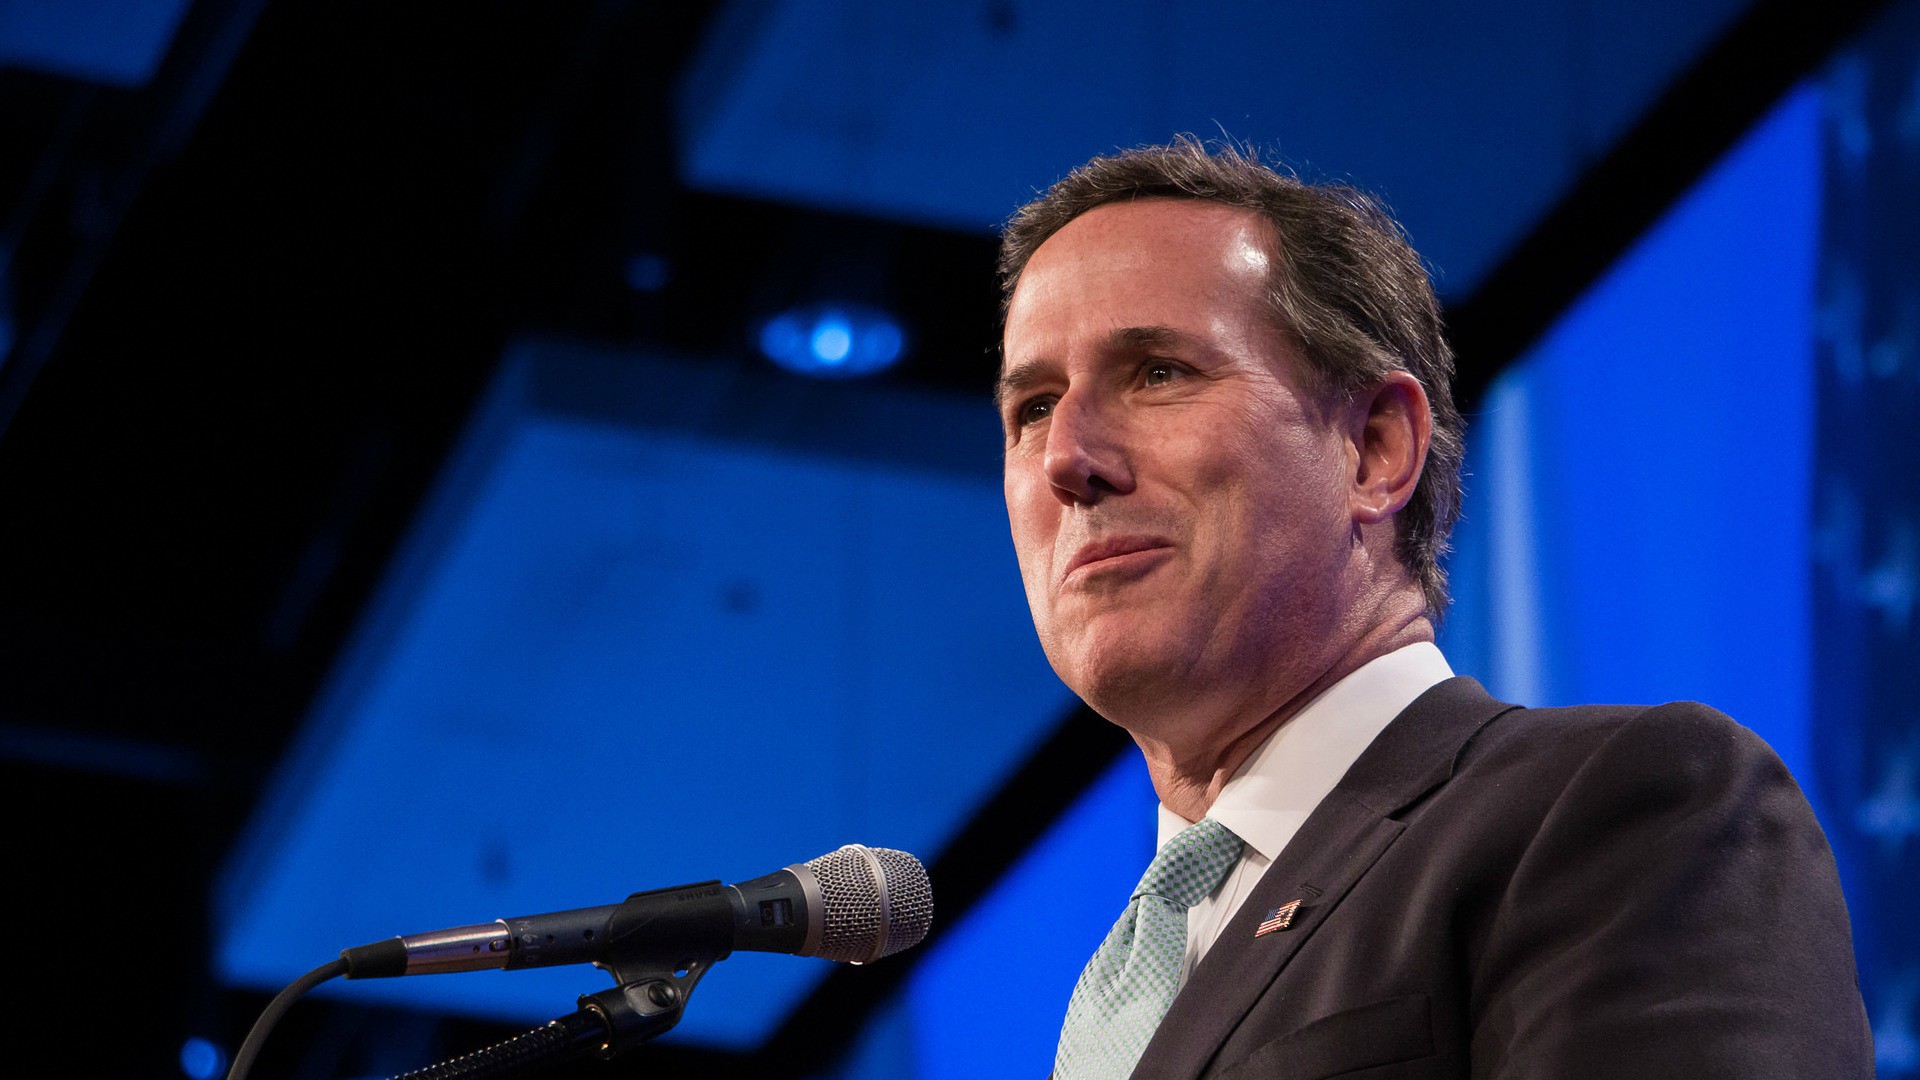 Le politicien américain Rick Santorum (Photo:John Pemble/Flickr/CC BY-ND 2.0)